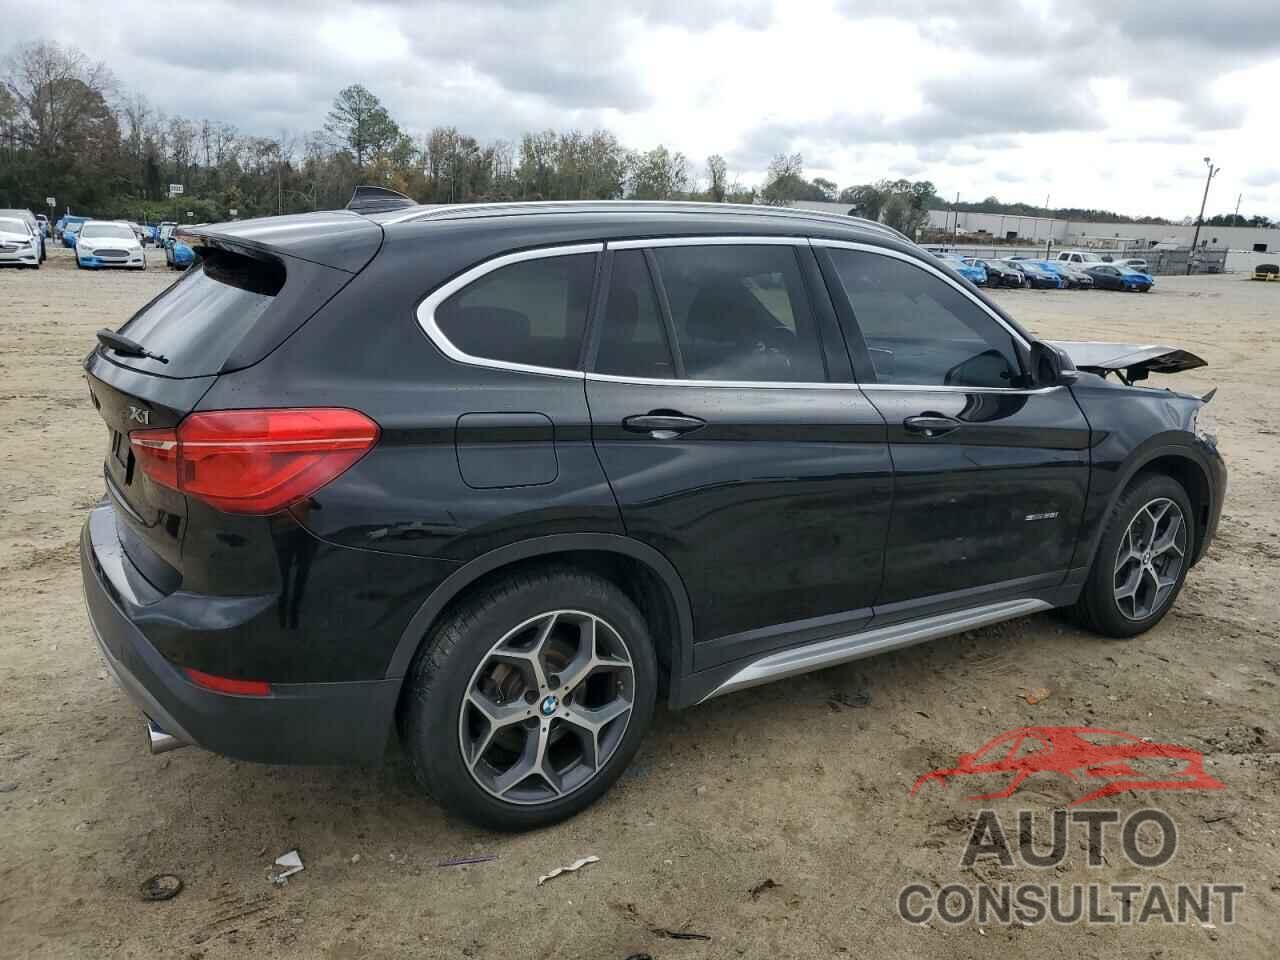 BMW X1 2018 - WBXHU7C38J5H42890